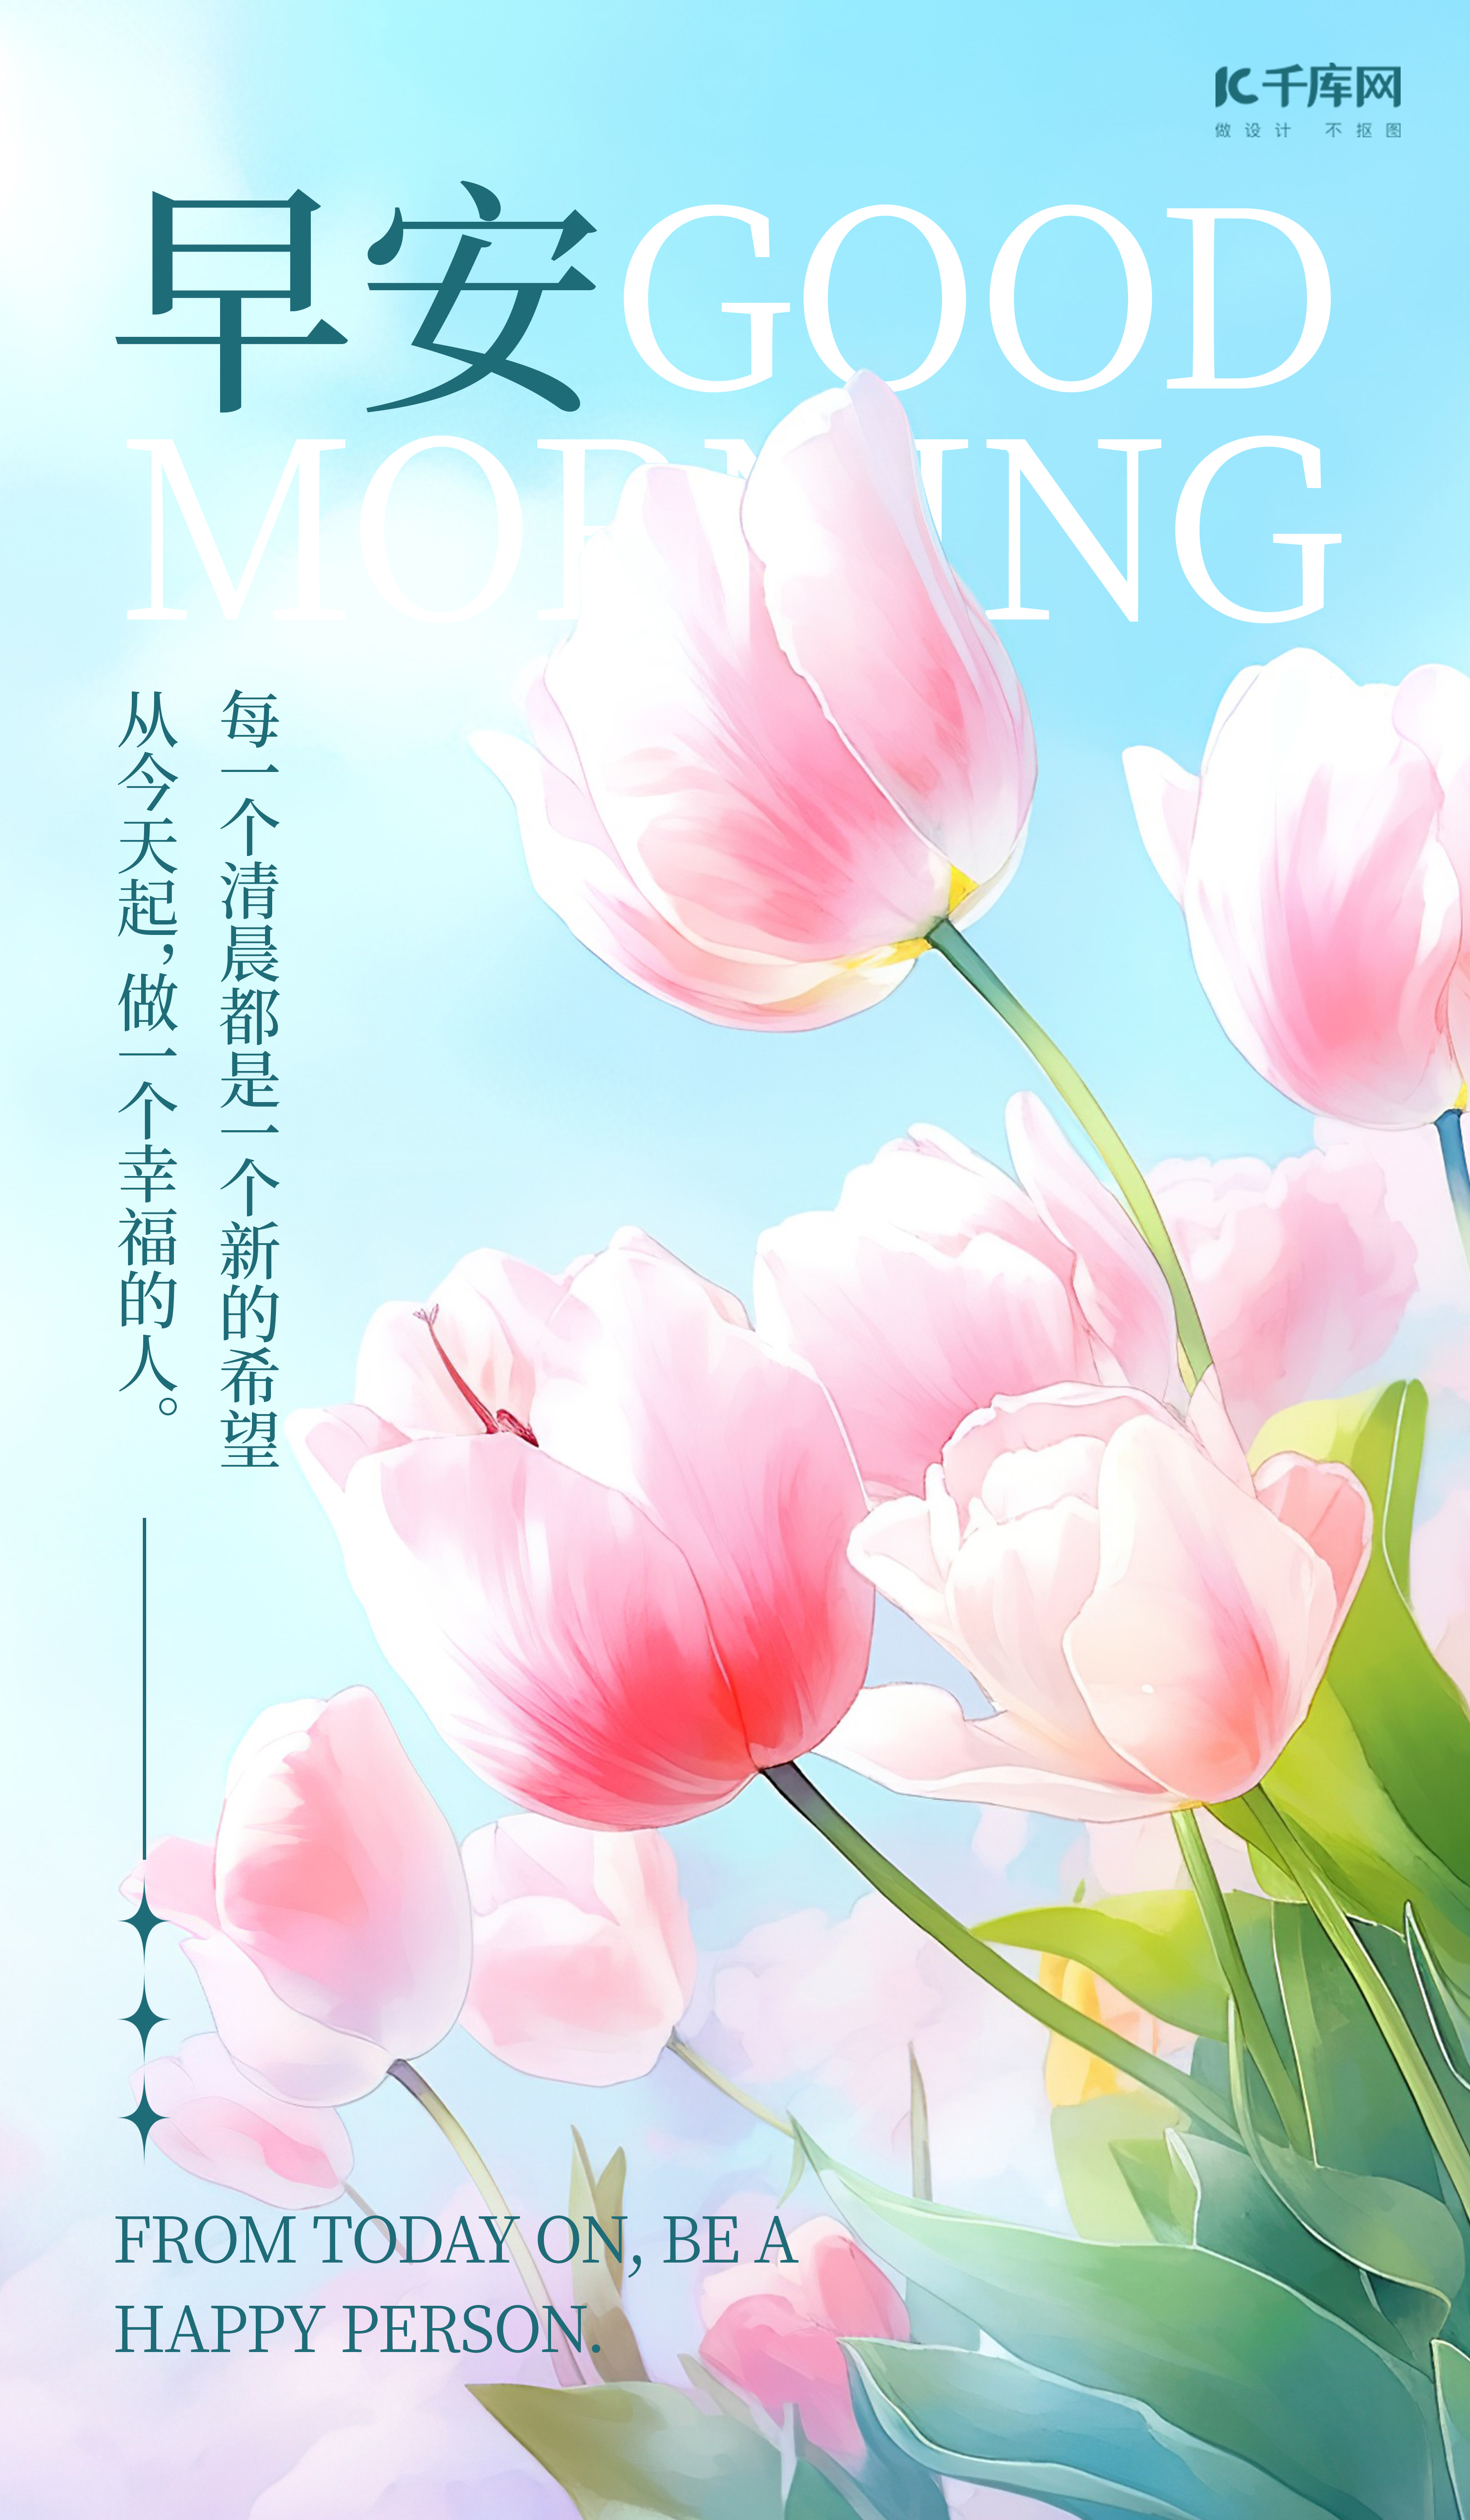 早安问候郁金香唯美鲜花AIGC广告宣传海报图片